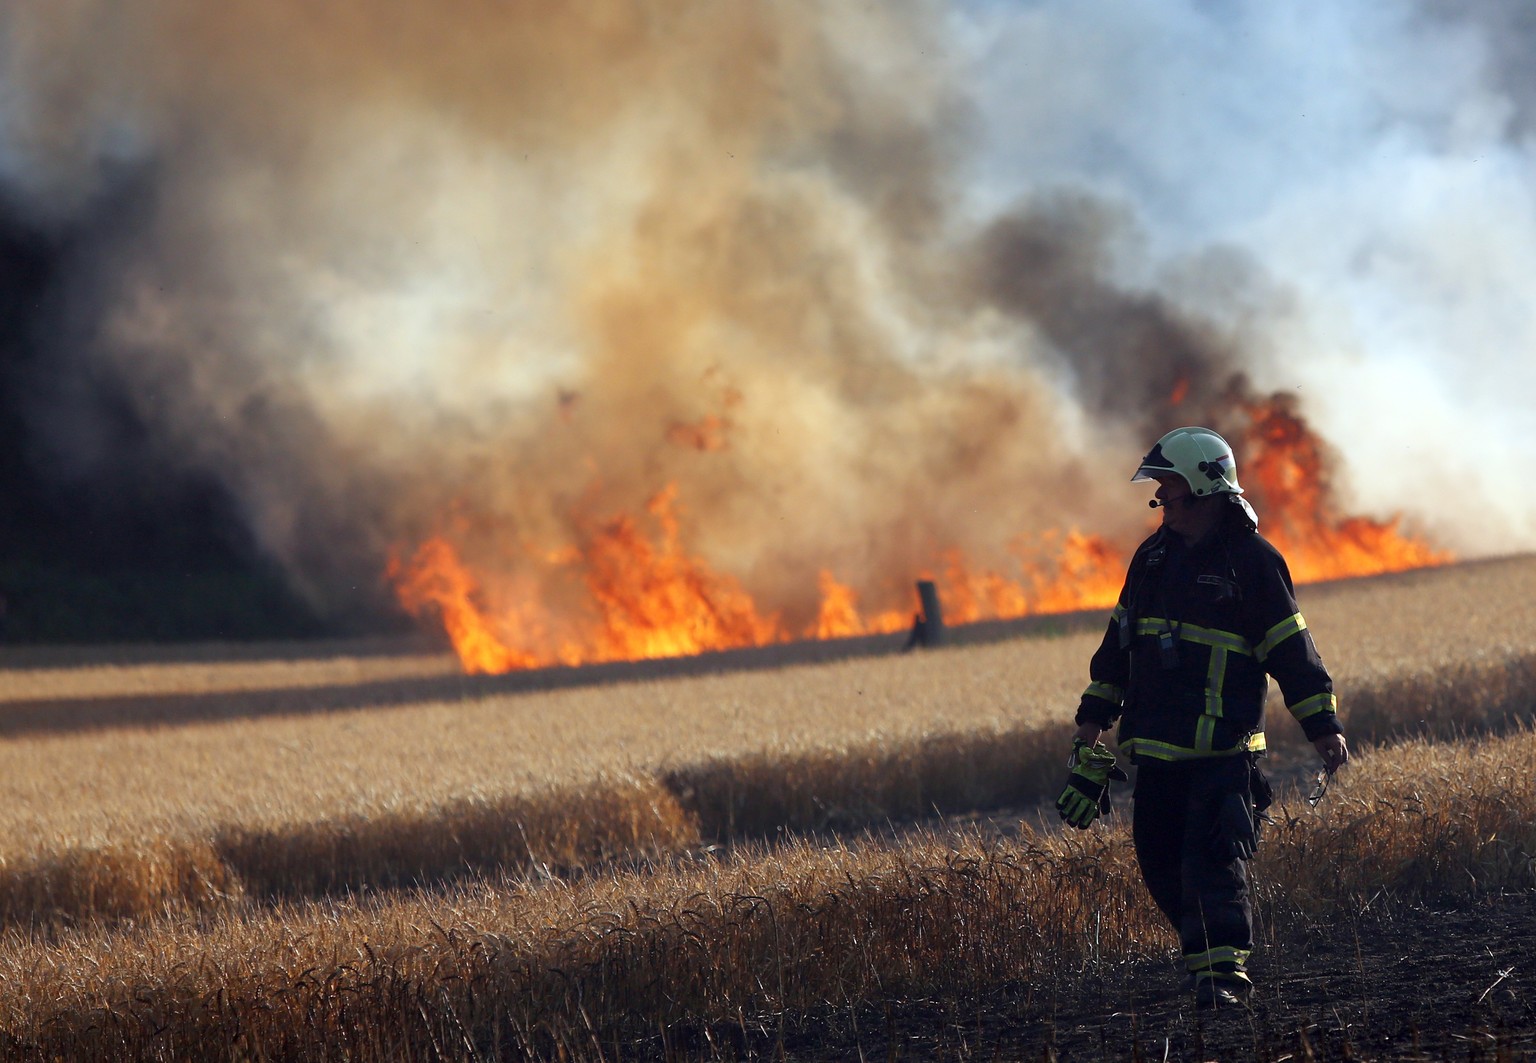 03.07.2018, Mecklenburg-Vorpommern, Rostock: In Rostock loeschen Feuerwehrleute ein Getreidefeld, das in Flammen steht. Aufgrund der Trockenheit sind in Mecklenburg-Vorpommern in den letzten Tagen zah ...